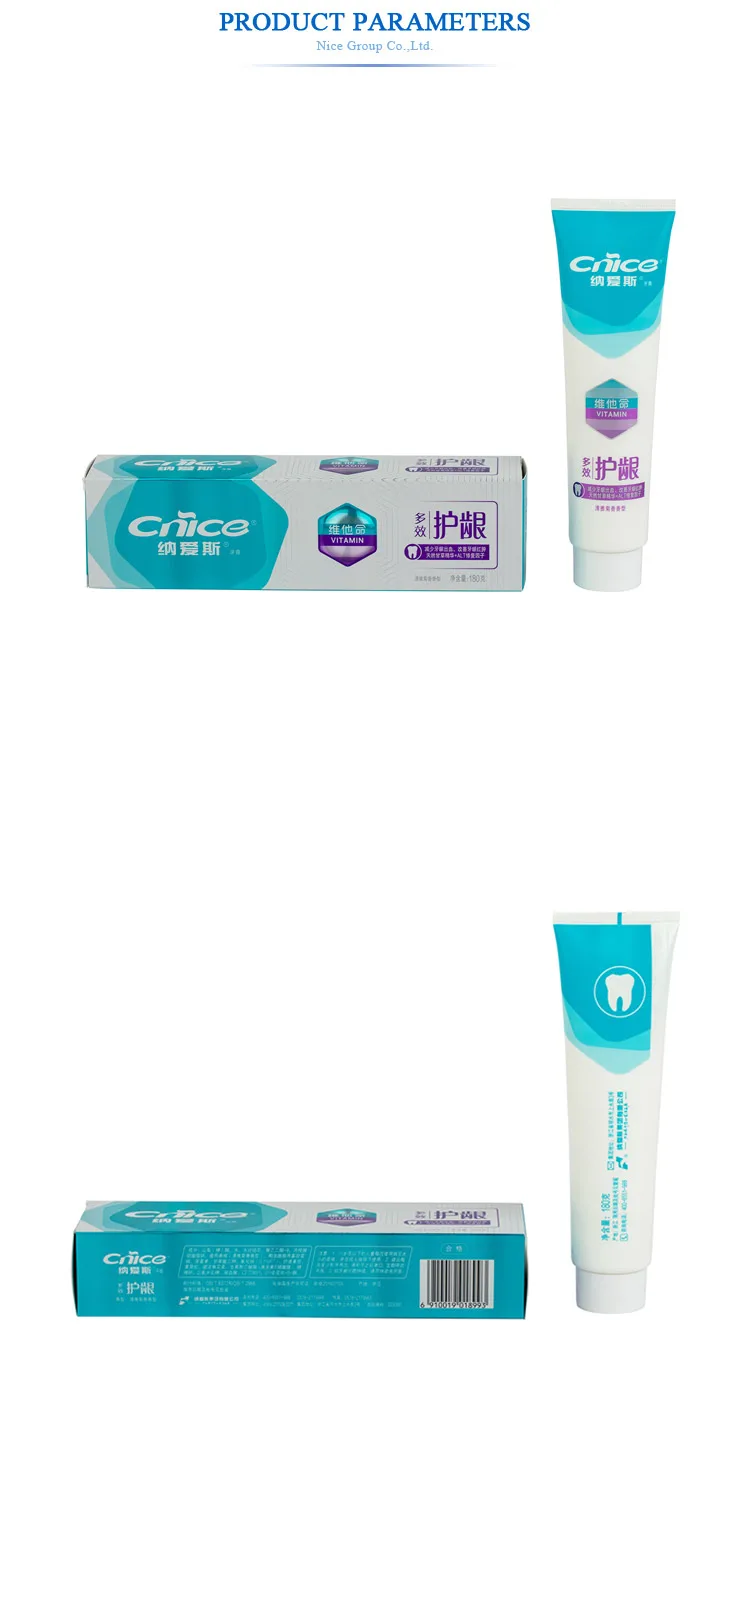 Customizable Toothpaste Teeth Whitening Non Fluoride - Buy Toothpaste,Teeth Whitening Toothpaste ...